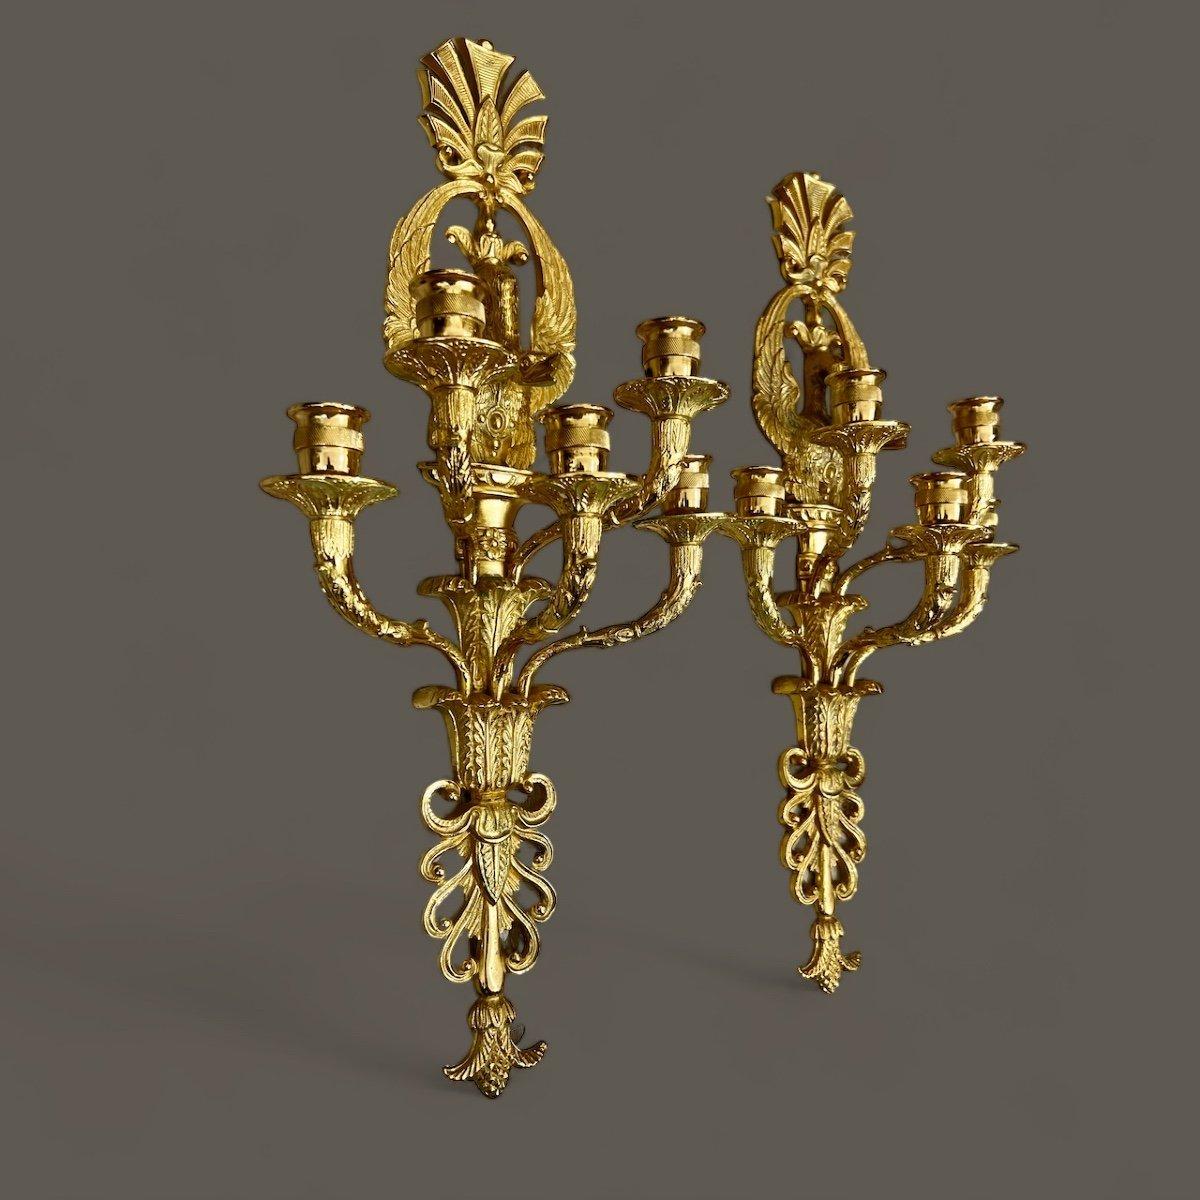 Cette paire d'appliques en bronze doré comporte cinq lumières chacune. Elles sont ornées de motifs de cygnes et de palmettes, incarnant le style opulent de Louis XVI. La qualité de la dorure est impeccable.

Il est également possible d'électrifier